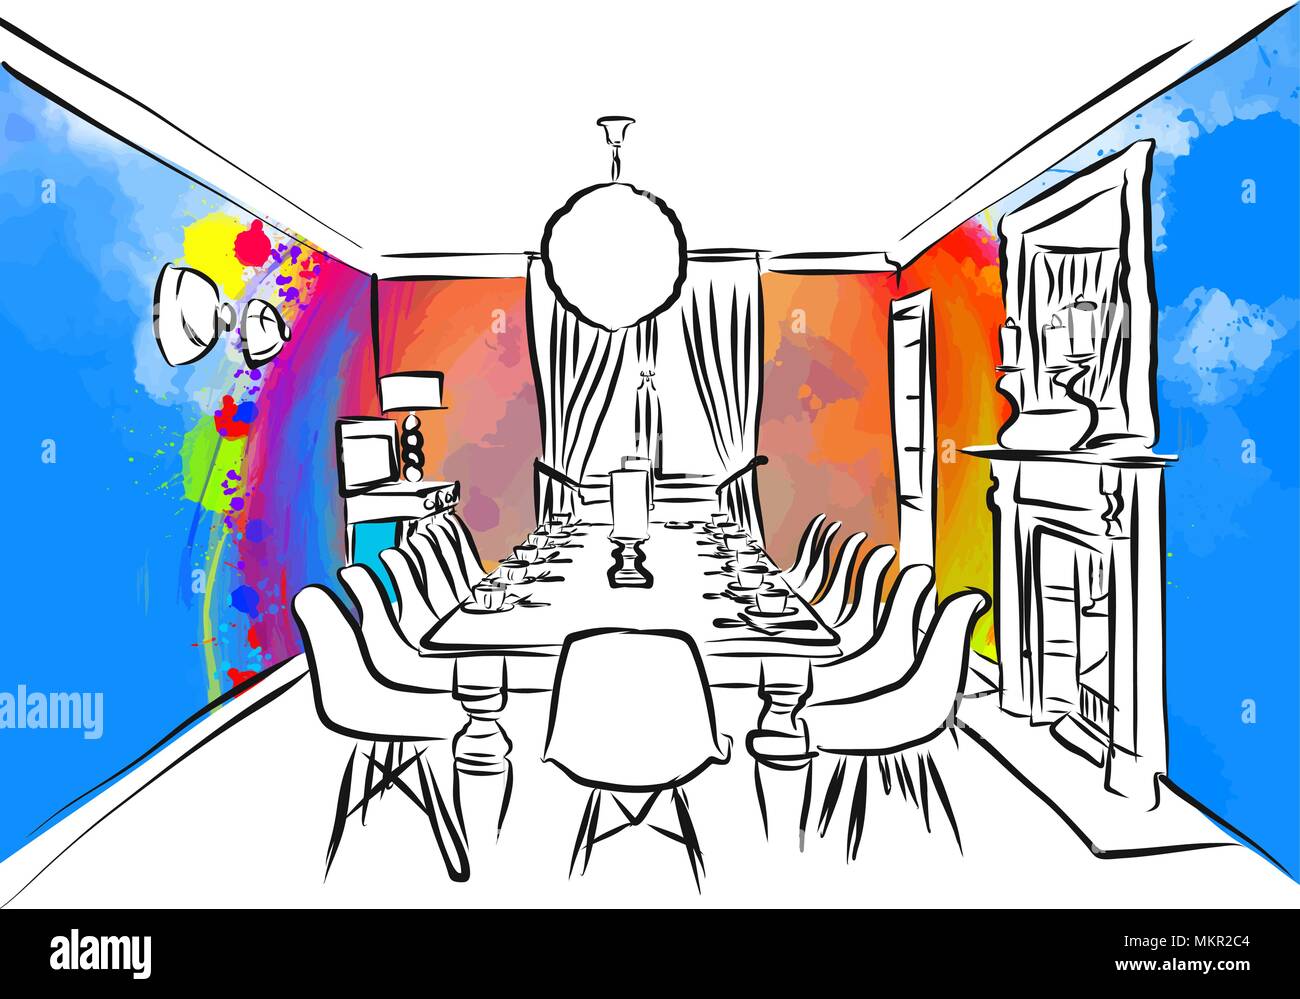 Sala Da Pranzo Disegno Colorato Concetto Disegnati A Mano Illustrazione Vettoriale Immagine E Vettoriale Alamy